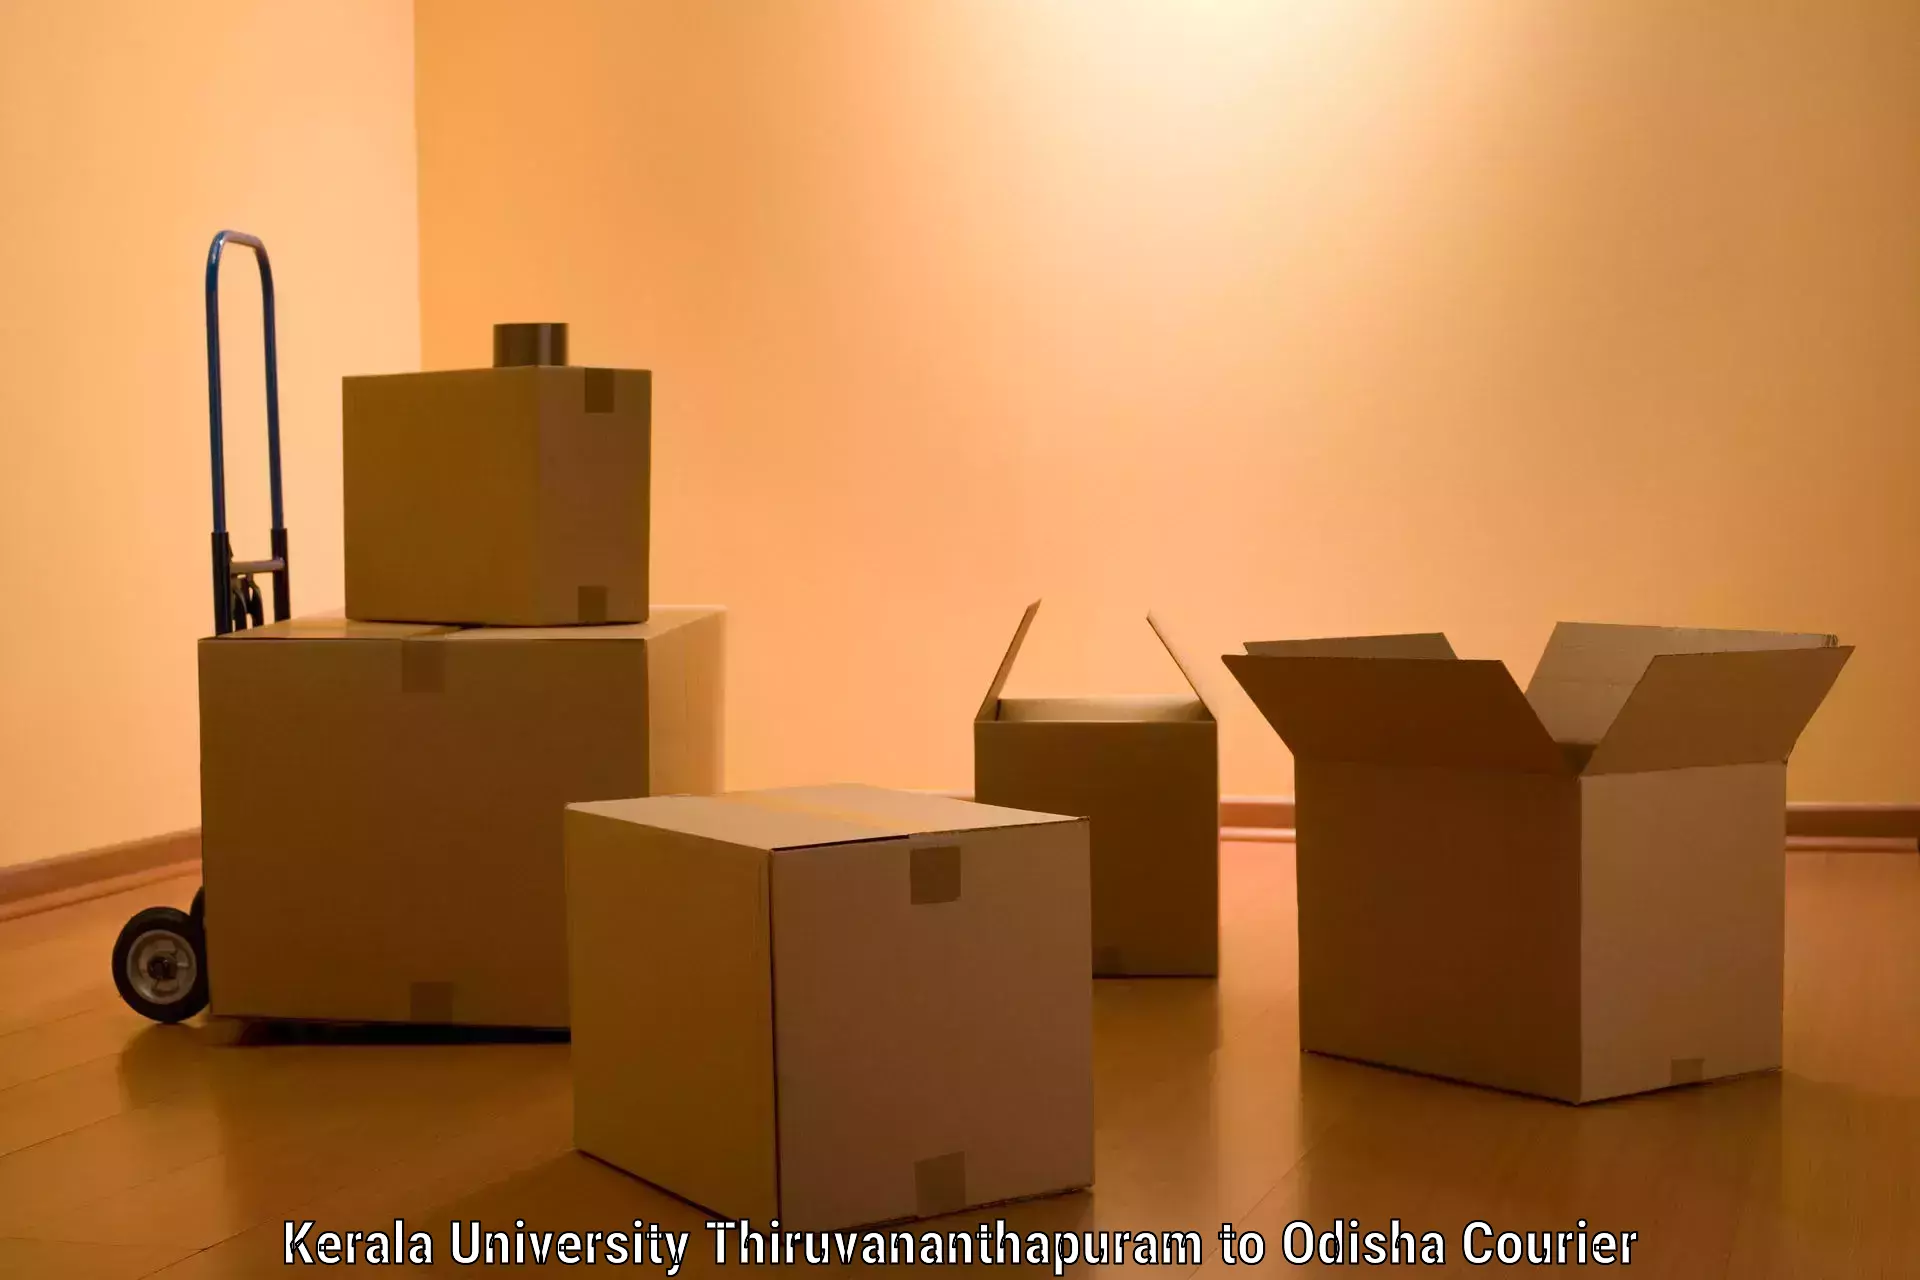 Efficient furniture movers Kerala University Thiruvananthapuram to Binjharpur